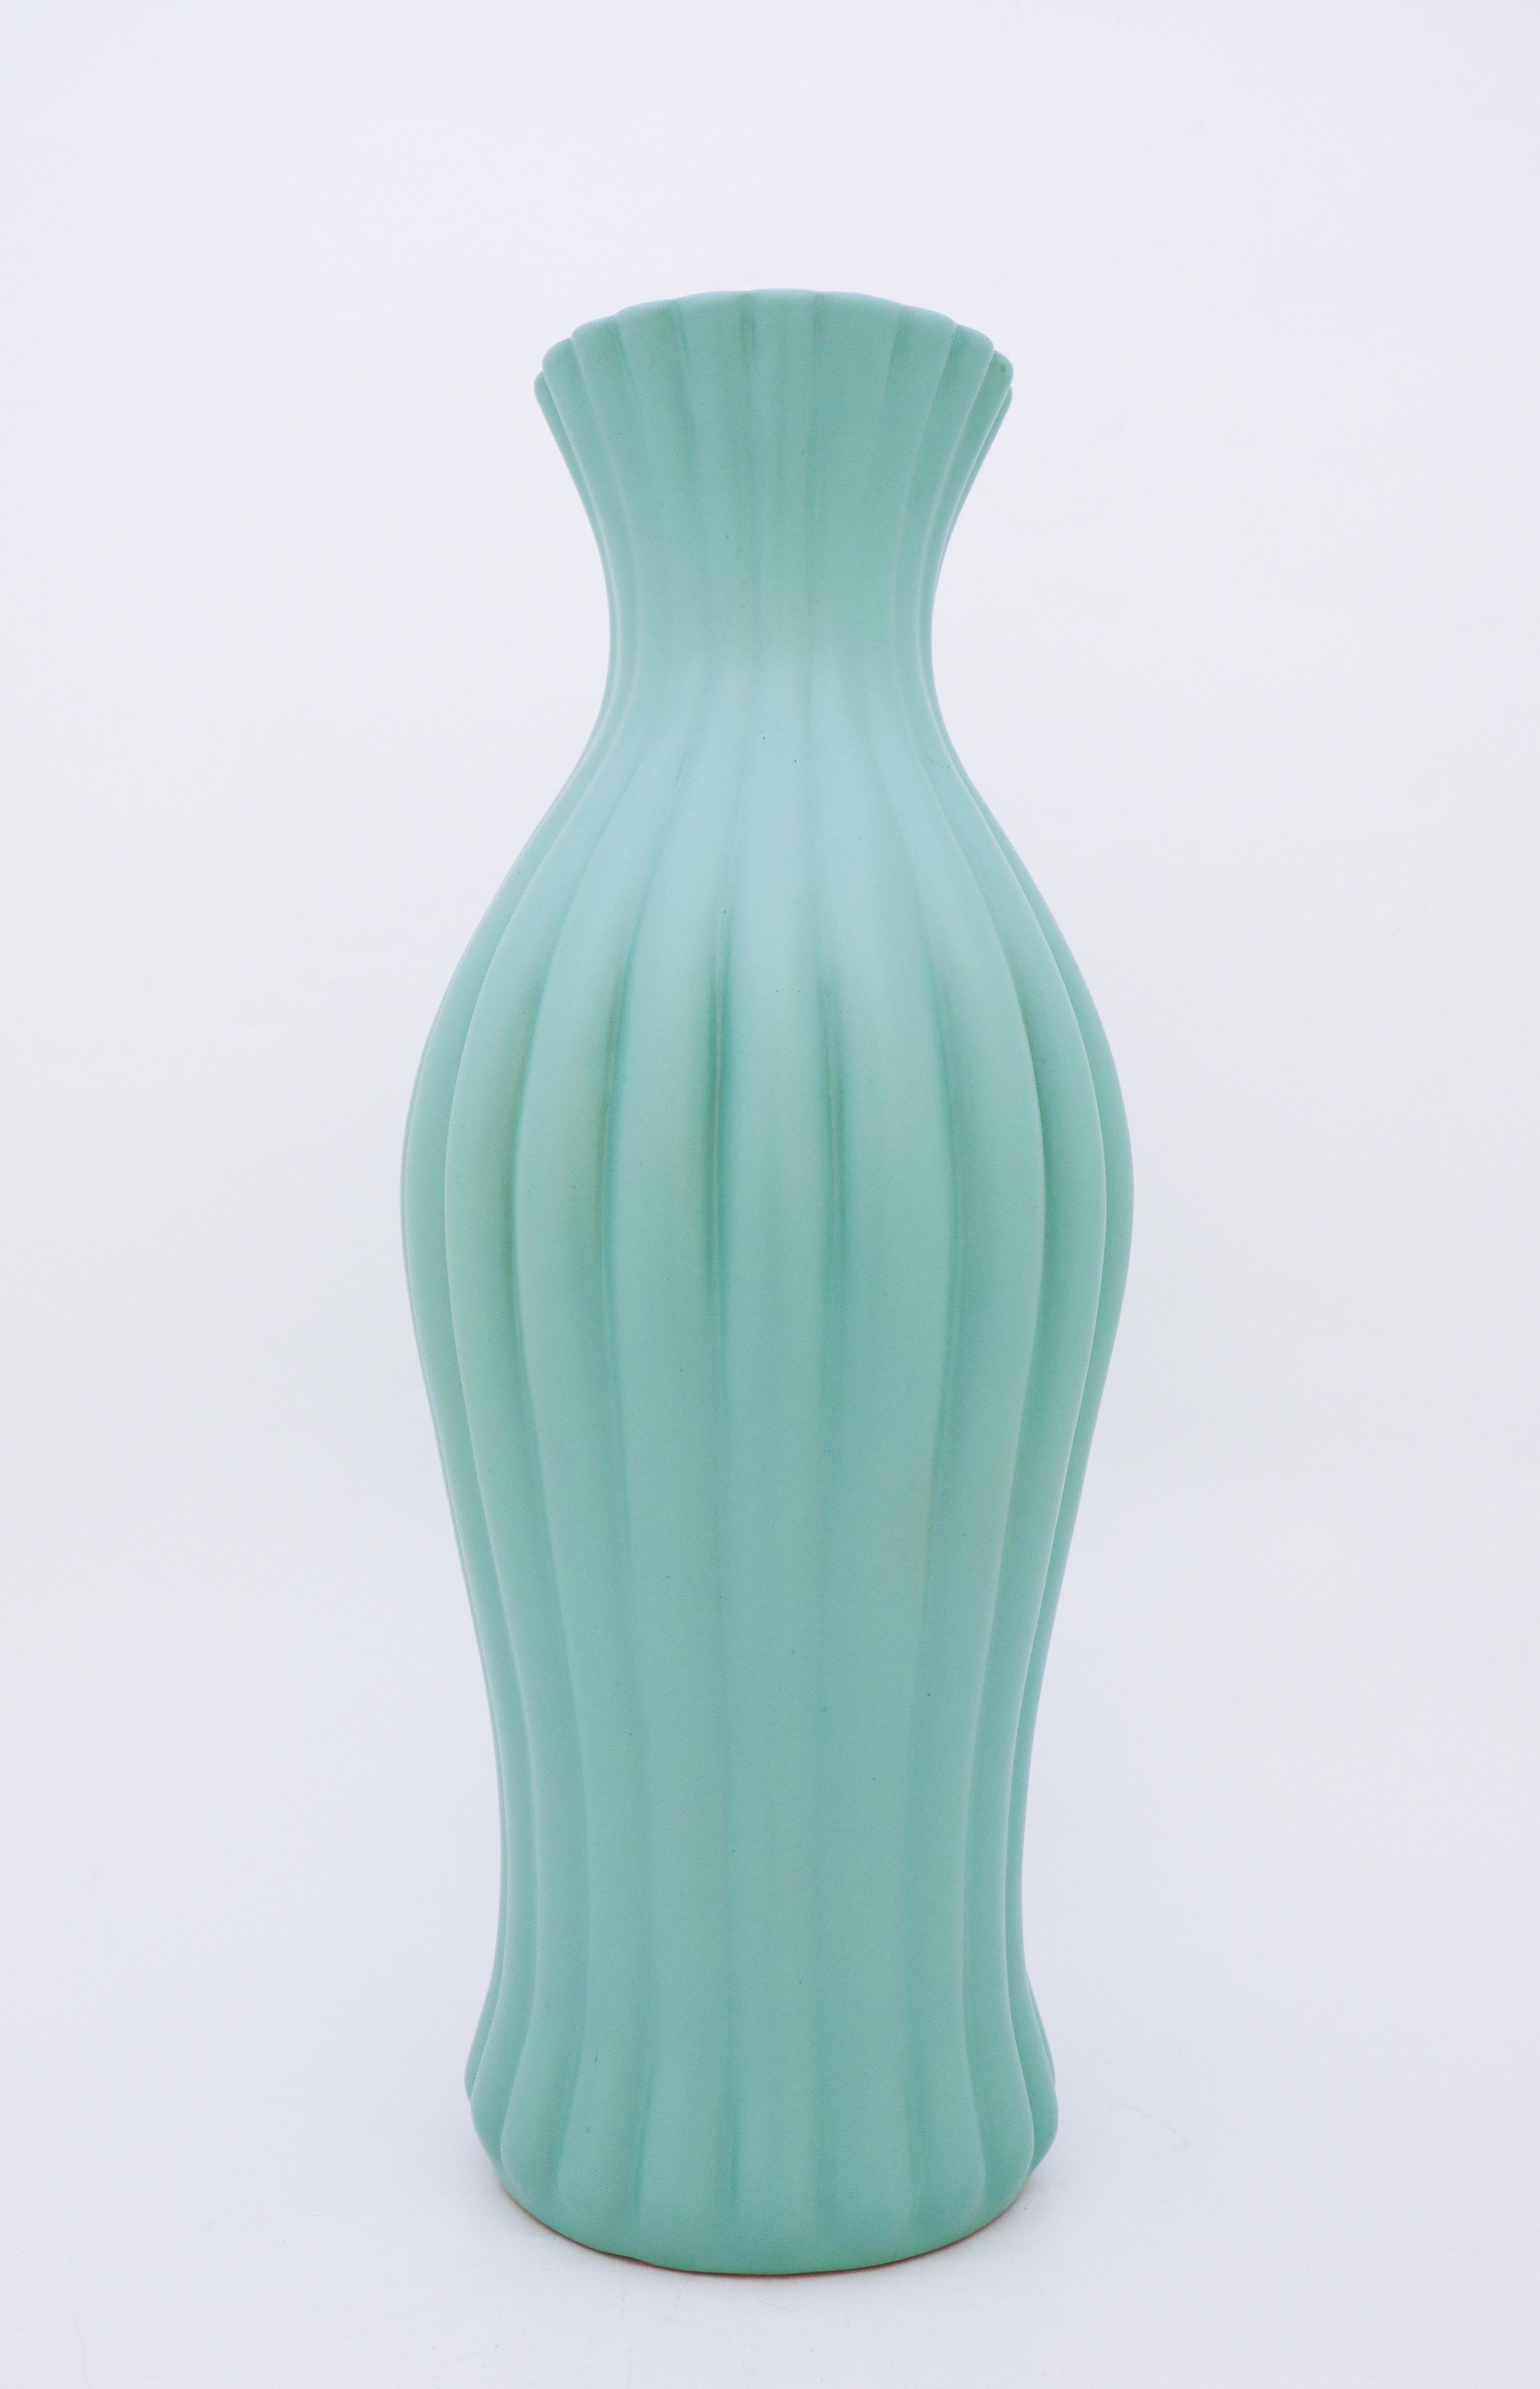 Vernissé Ewald Dahlskog, grand vase turquoise, Bo Fajans, Suède, années 1930 en vente